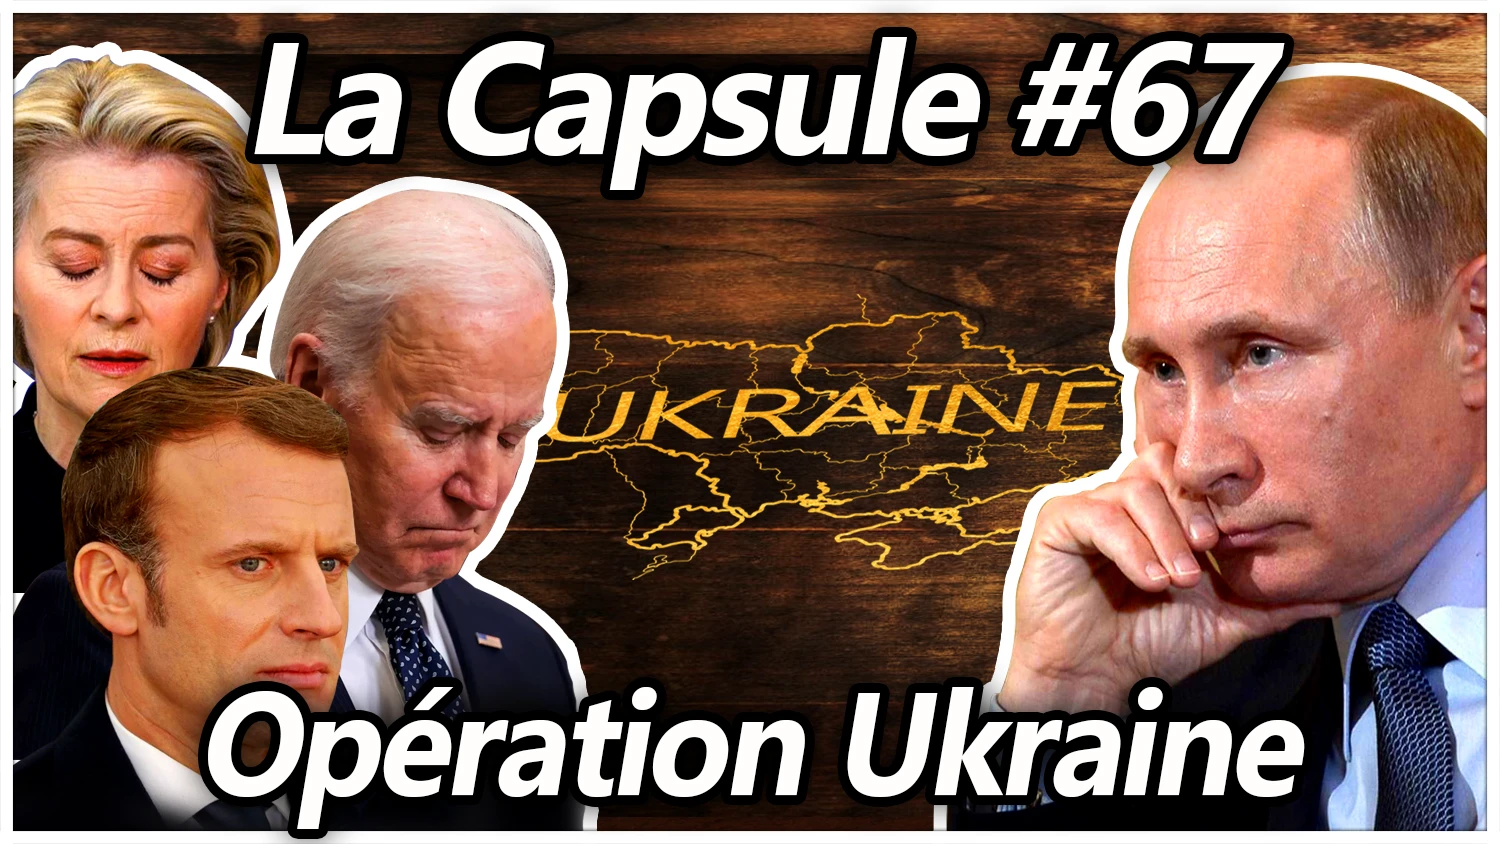 La Capsule #67 – Opération Ukraine